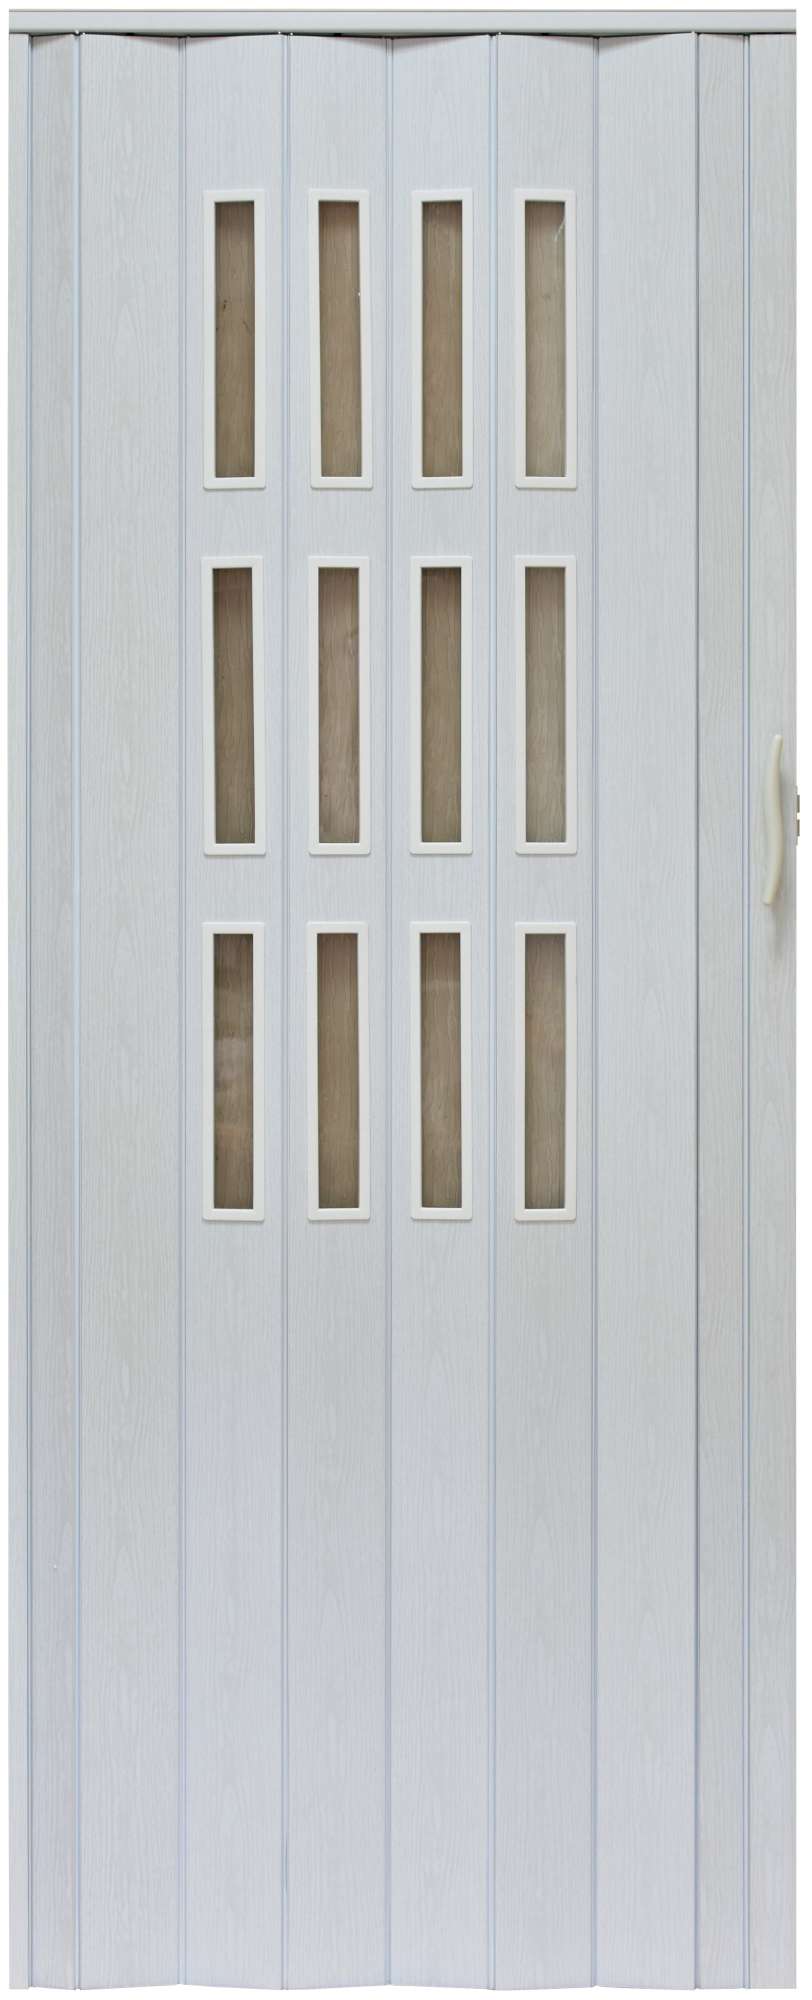 Drzwi harmonijkowe 001S - 100 cm - 49 biały dąb